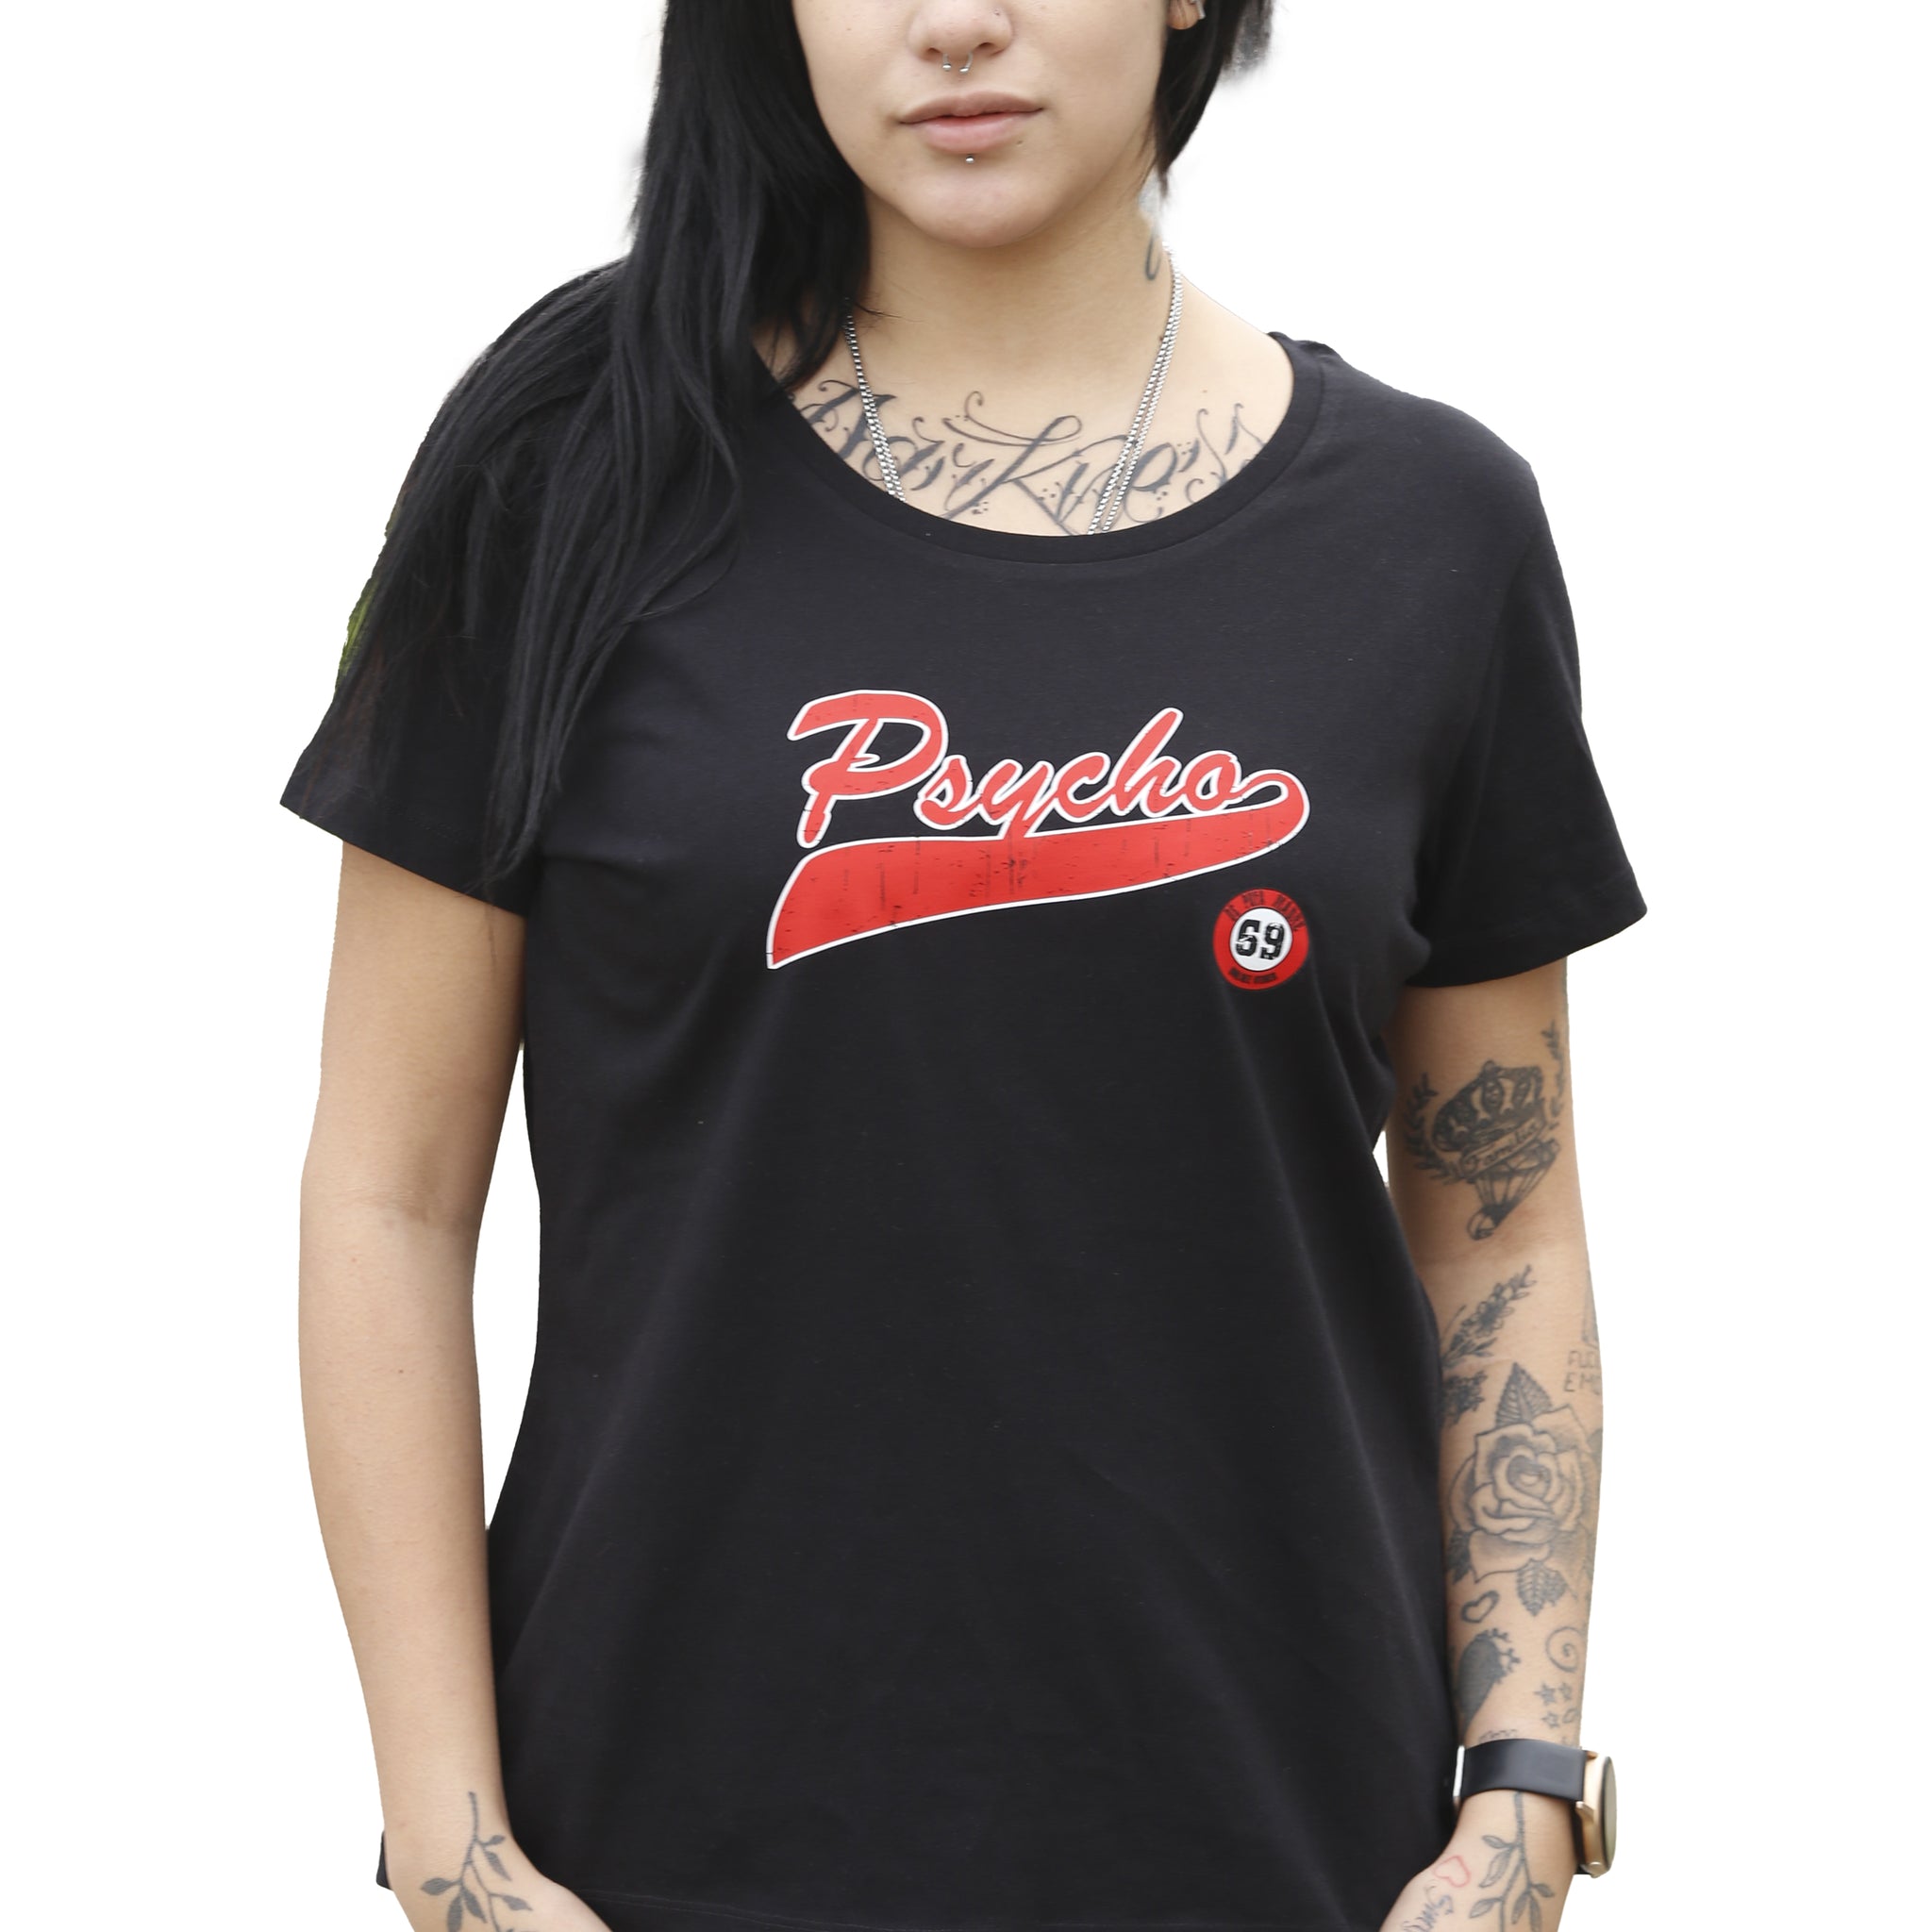 DPM69 T-shirt da donna disegno fatto a mano in italia    psycho girl